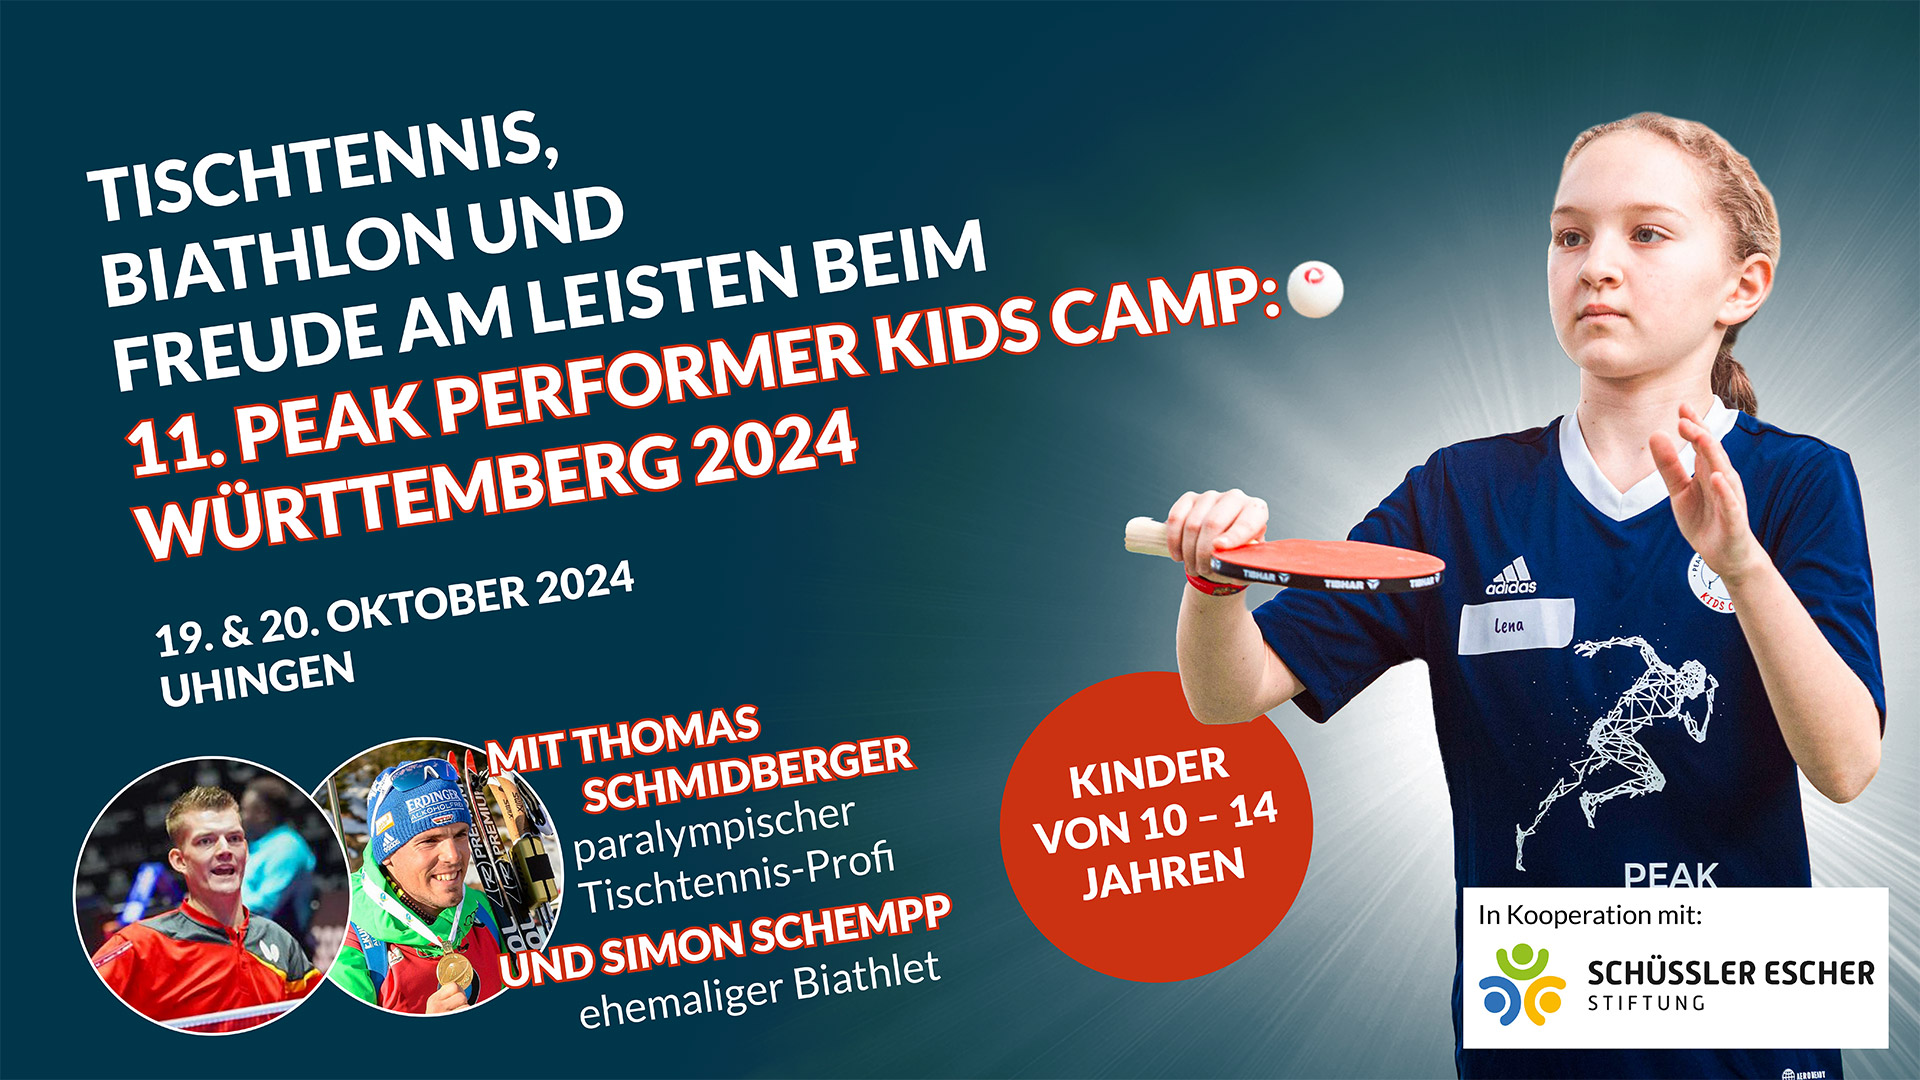 Peak Performer Kids Camp Württemberg 